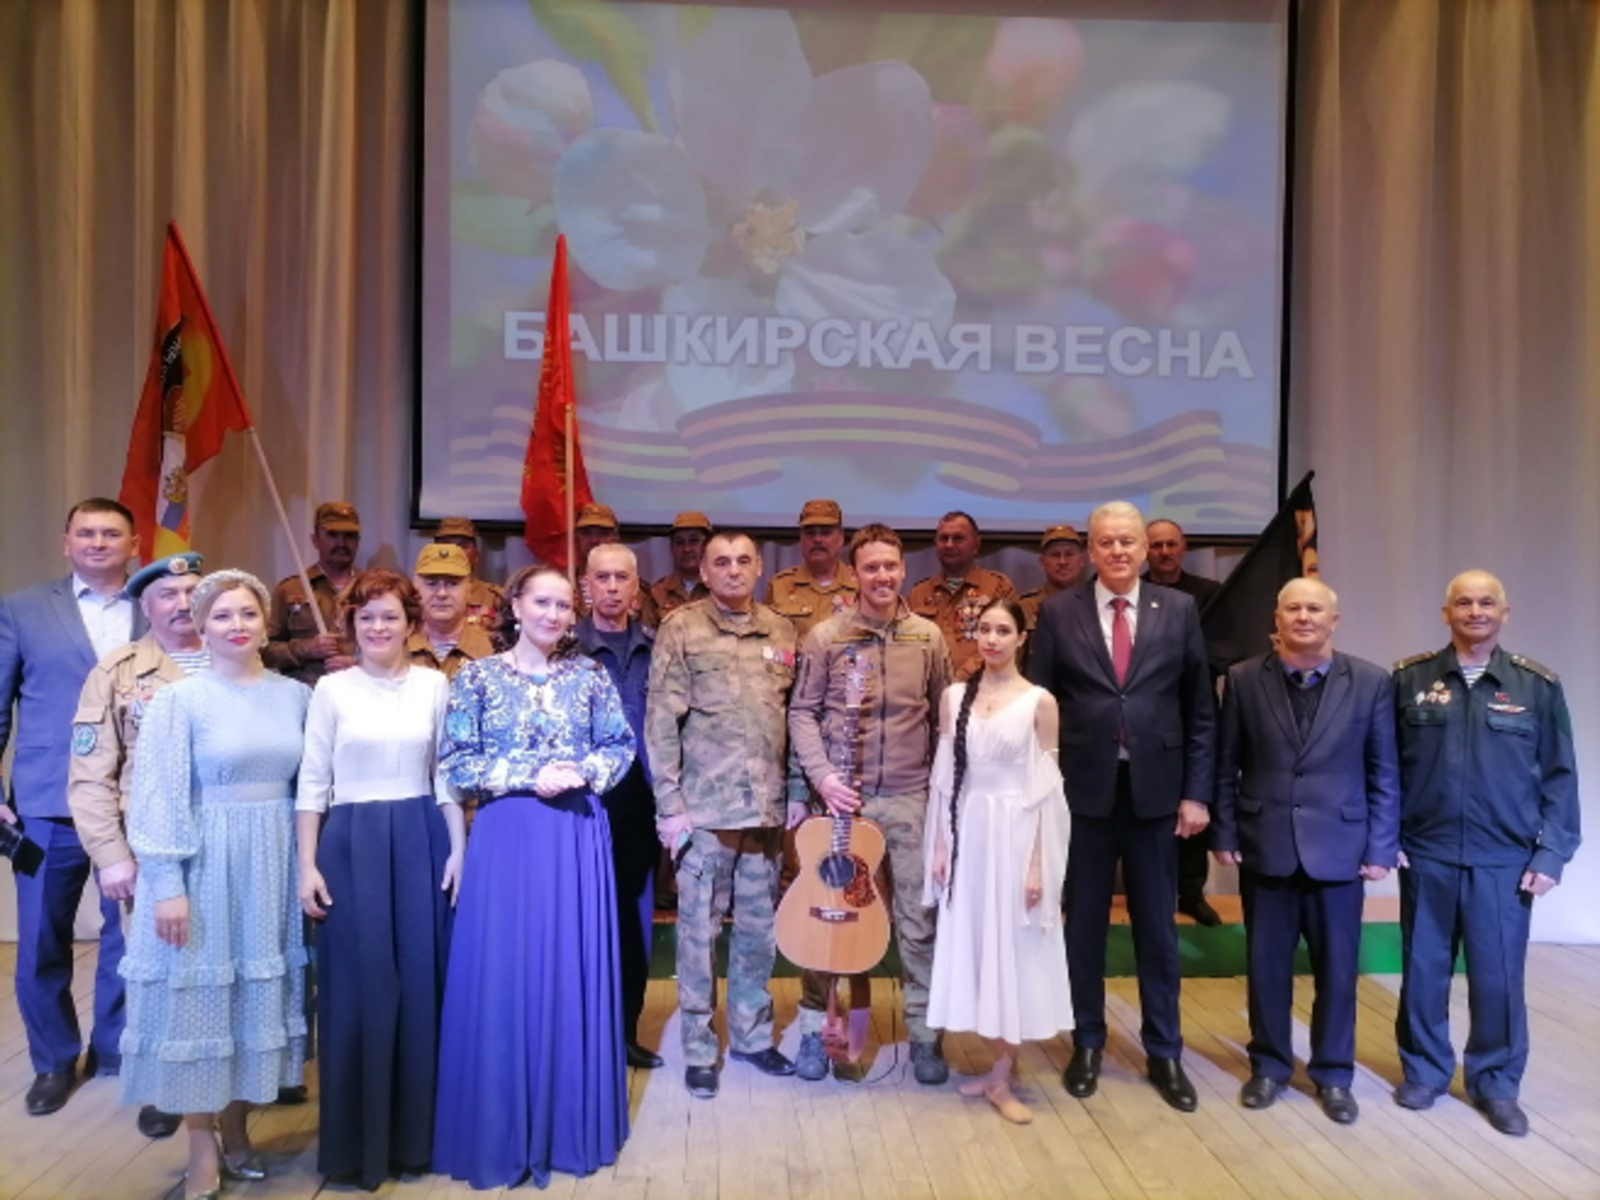 В городах и районах республики прошли концерты «Башкирская весна» в поддержку участников СВО